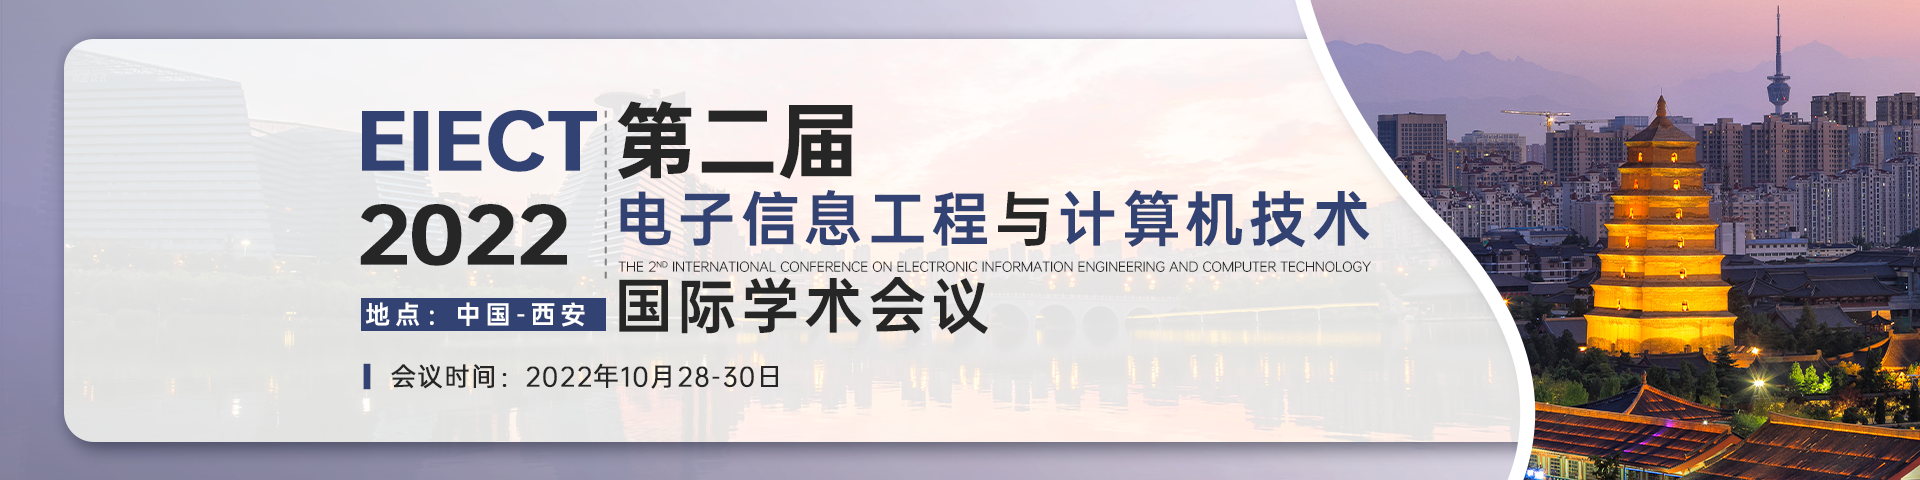 10月西安EIECT2021-会议艾思banner-何雪仪-20220117.png